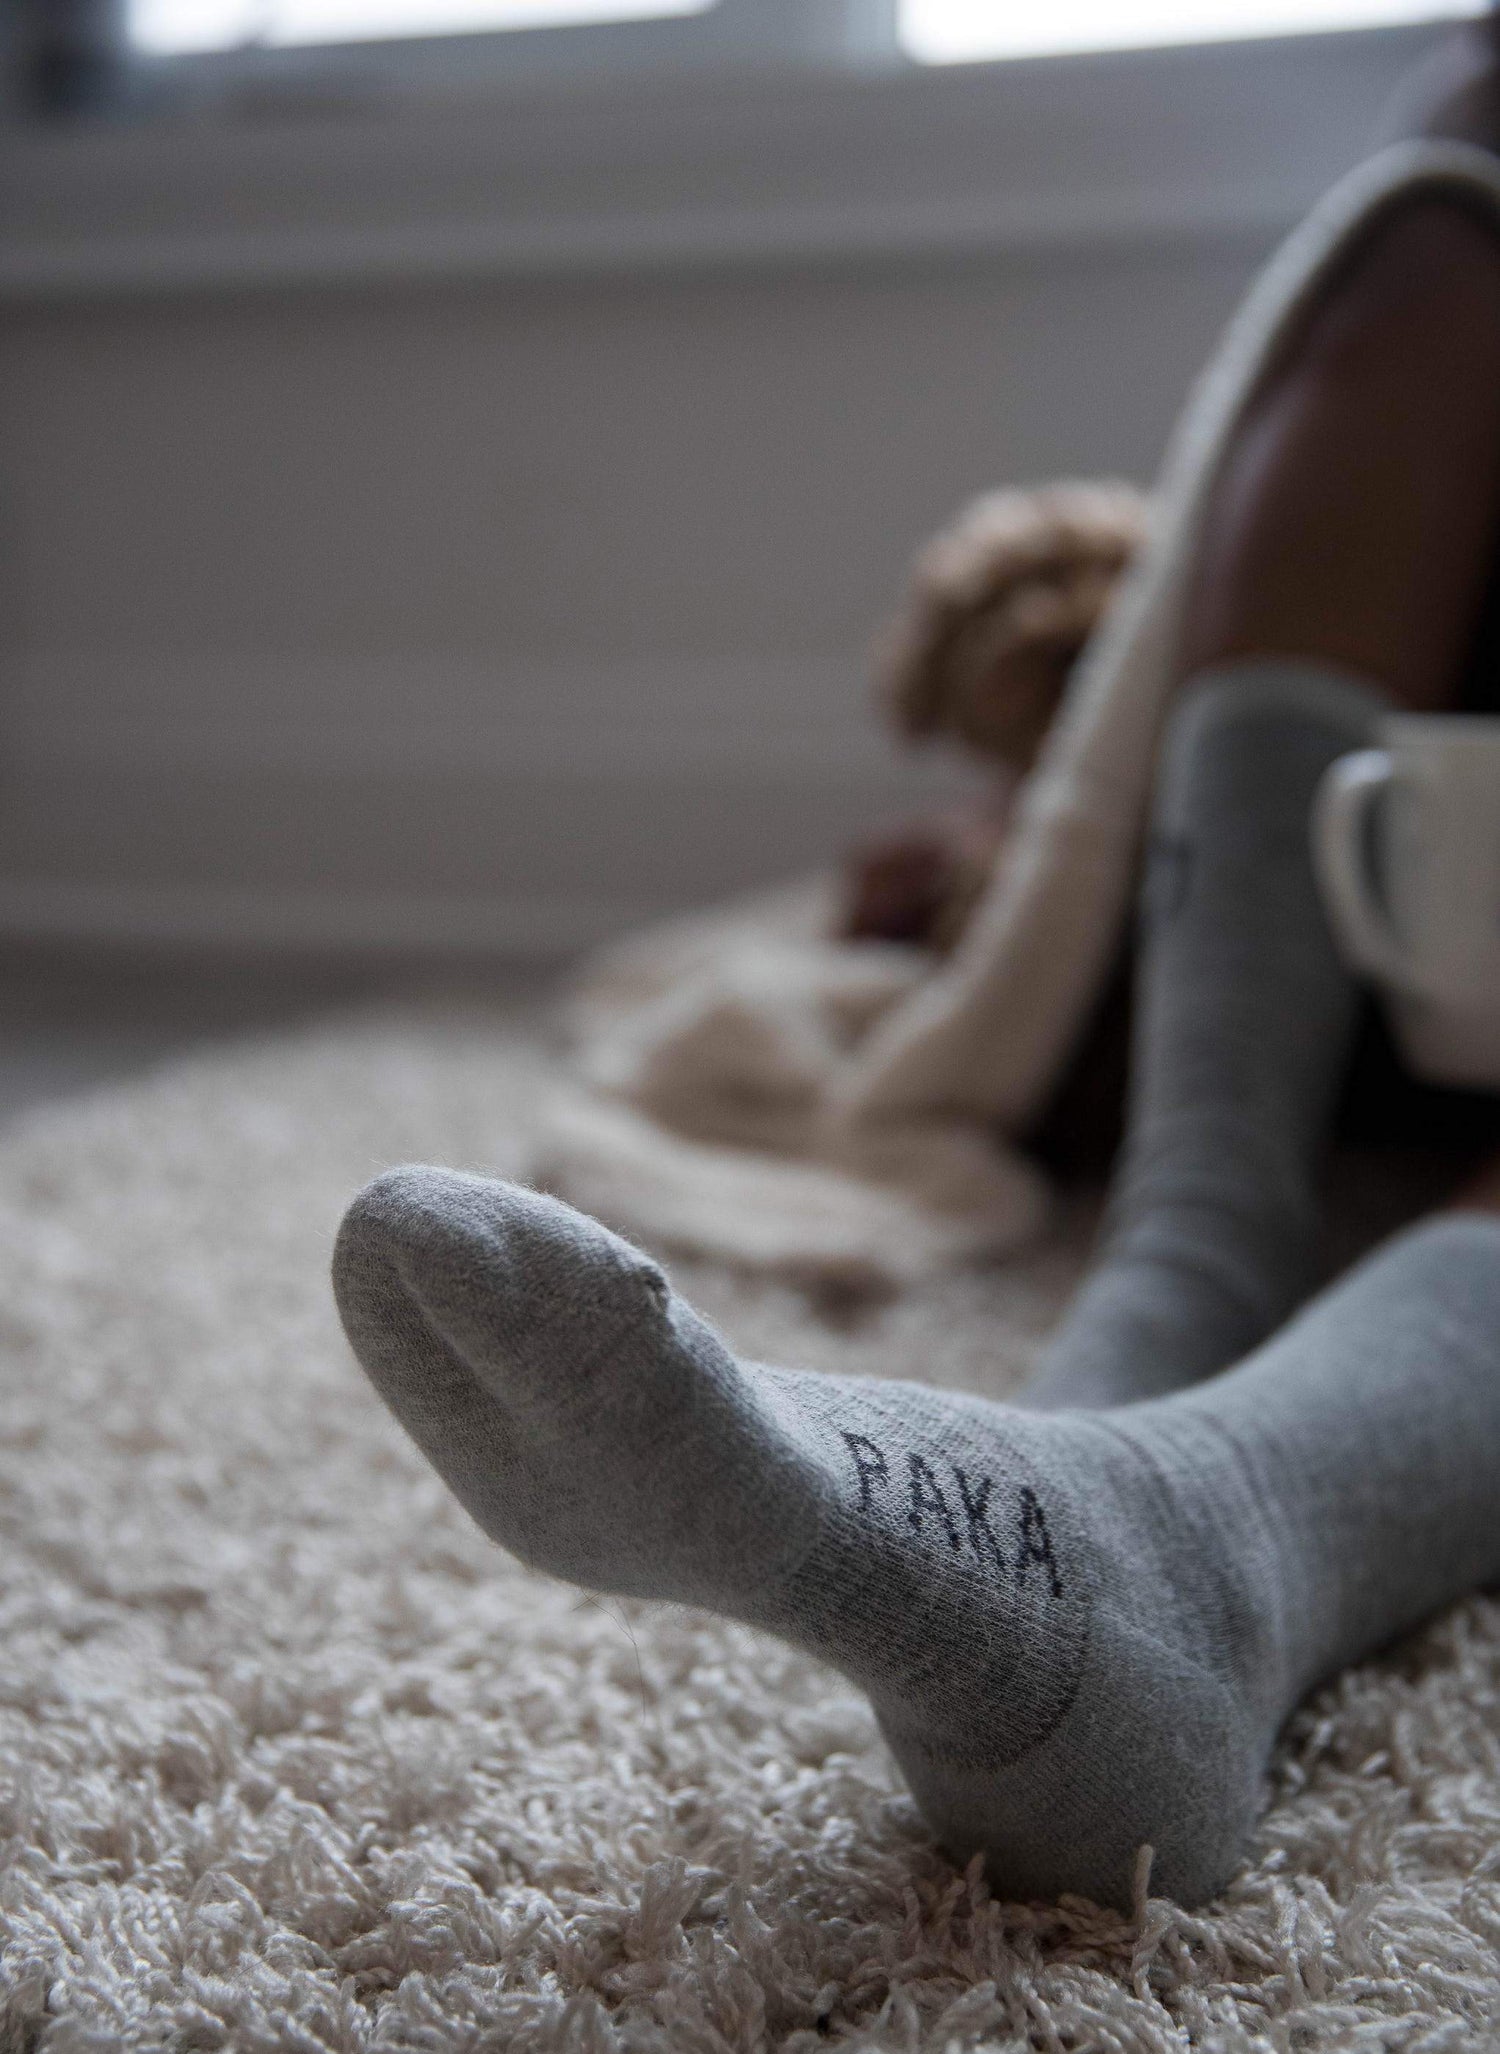 Alpaca socks on rug